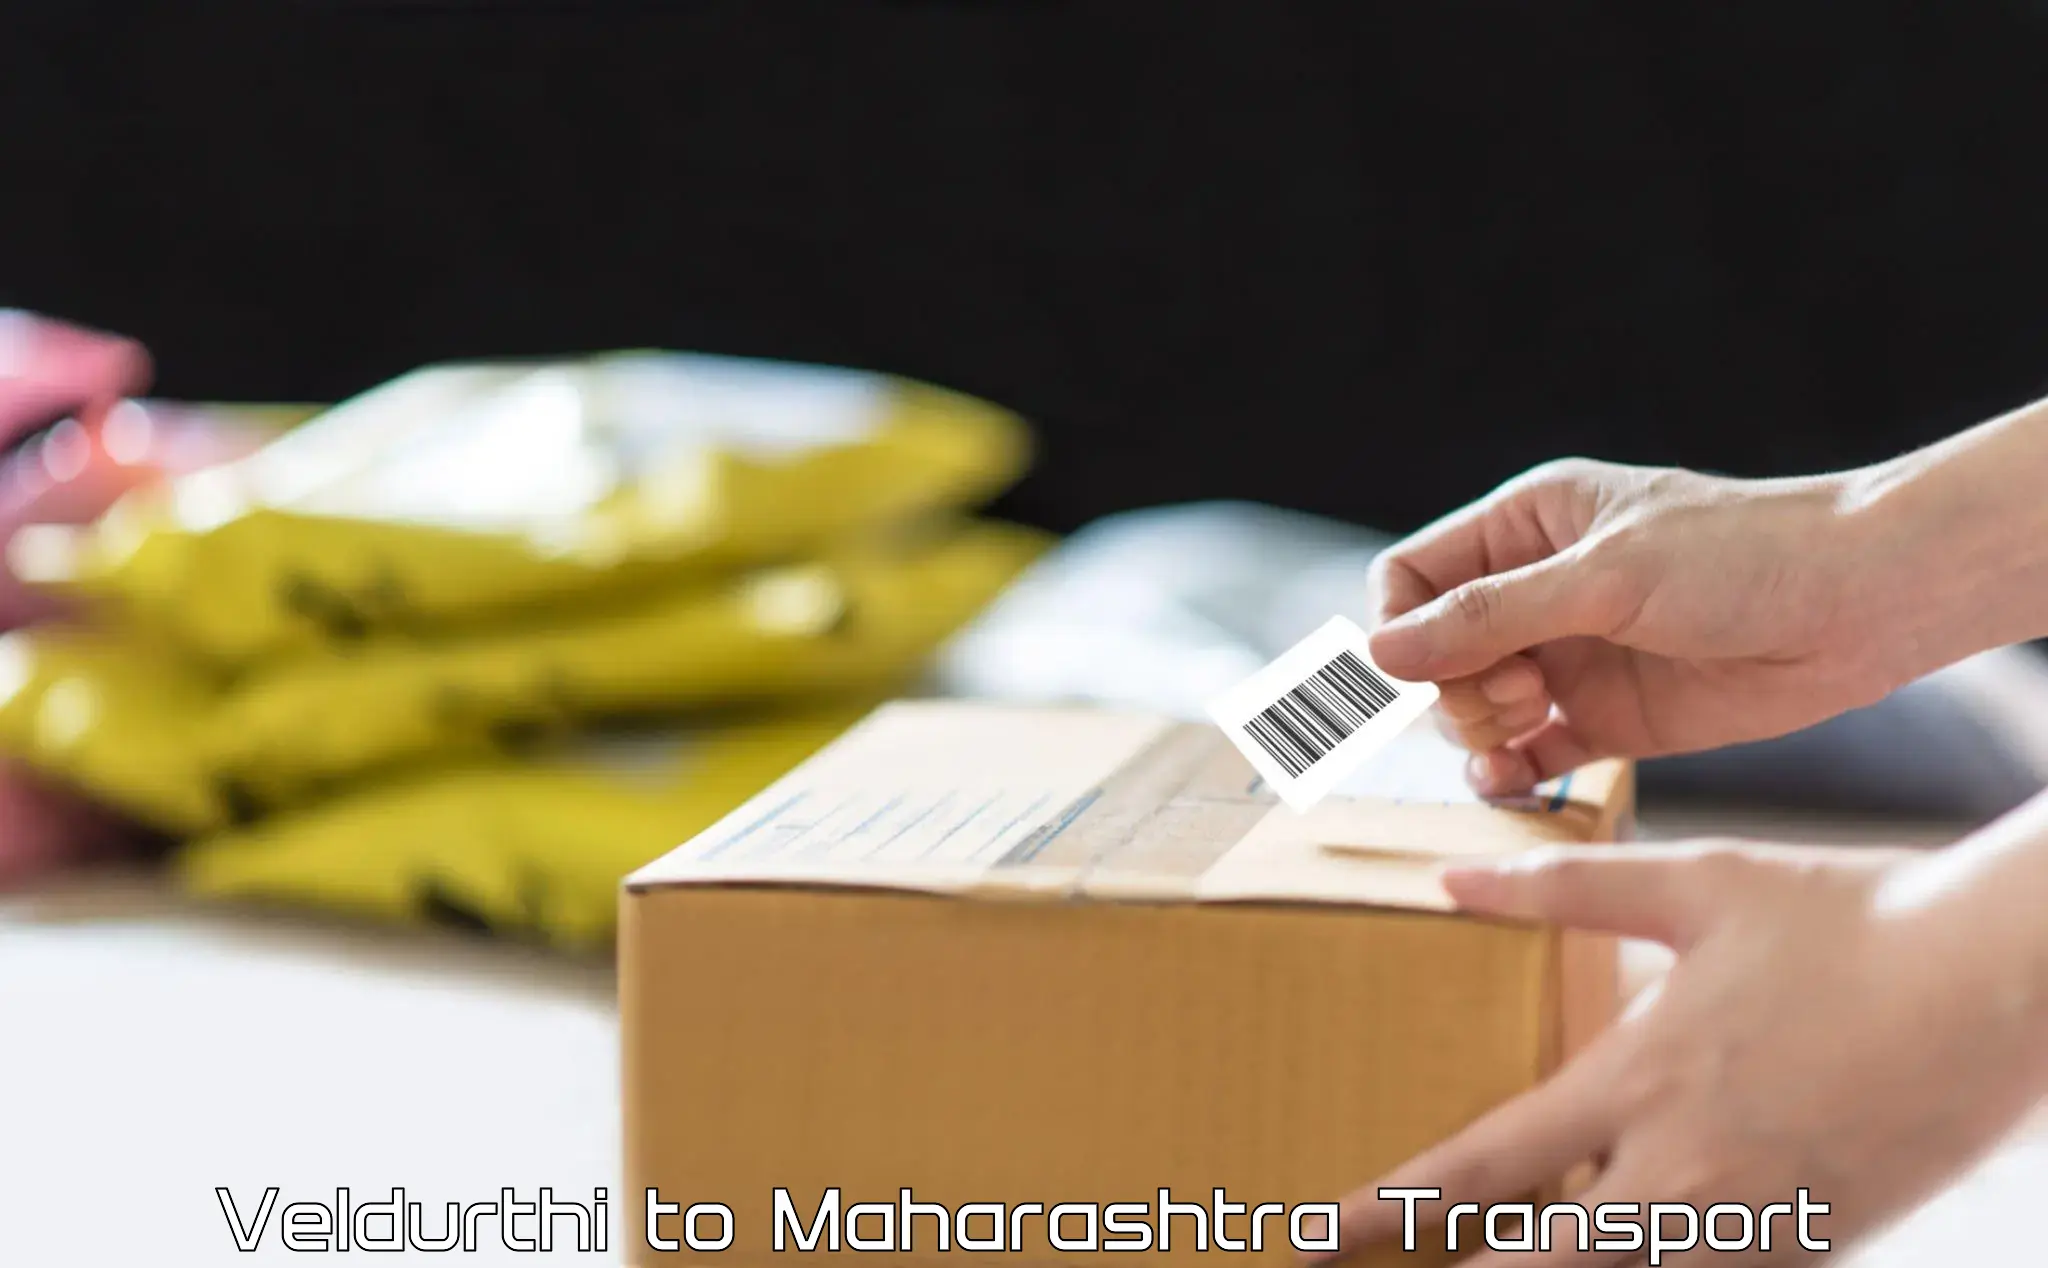 Online transport Veldurthi to Maharashtra